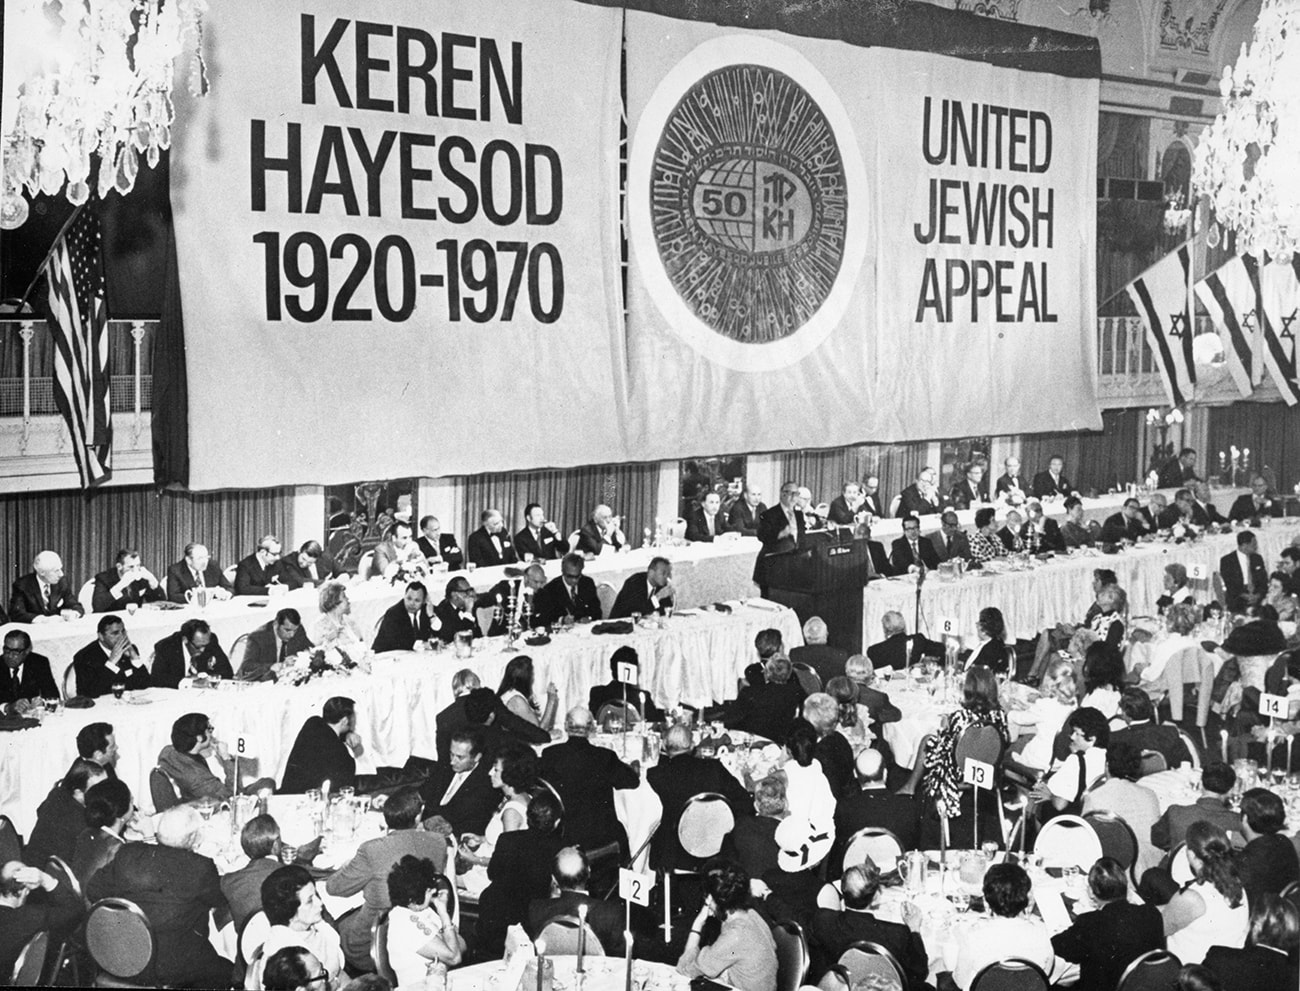 O presidente do United Jewish Appeal nos EUA, A. Zinberg, em discurso durante o evento que marcou o jubileu do Keren Hayesod em Nova York, em julho de 1970